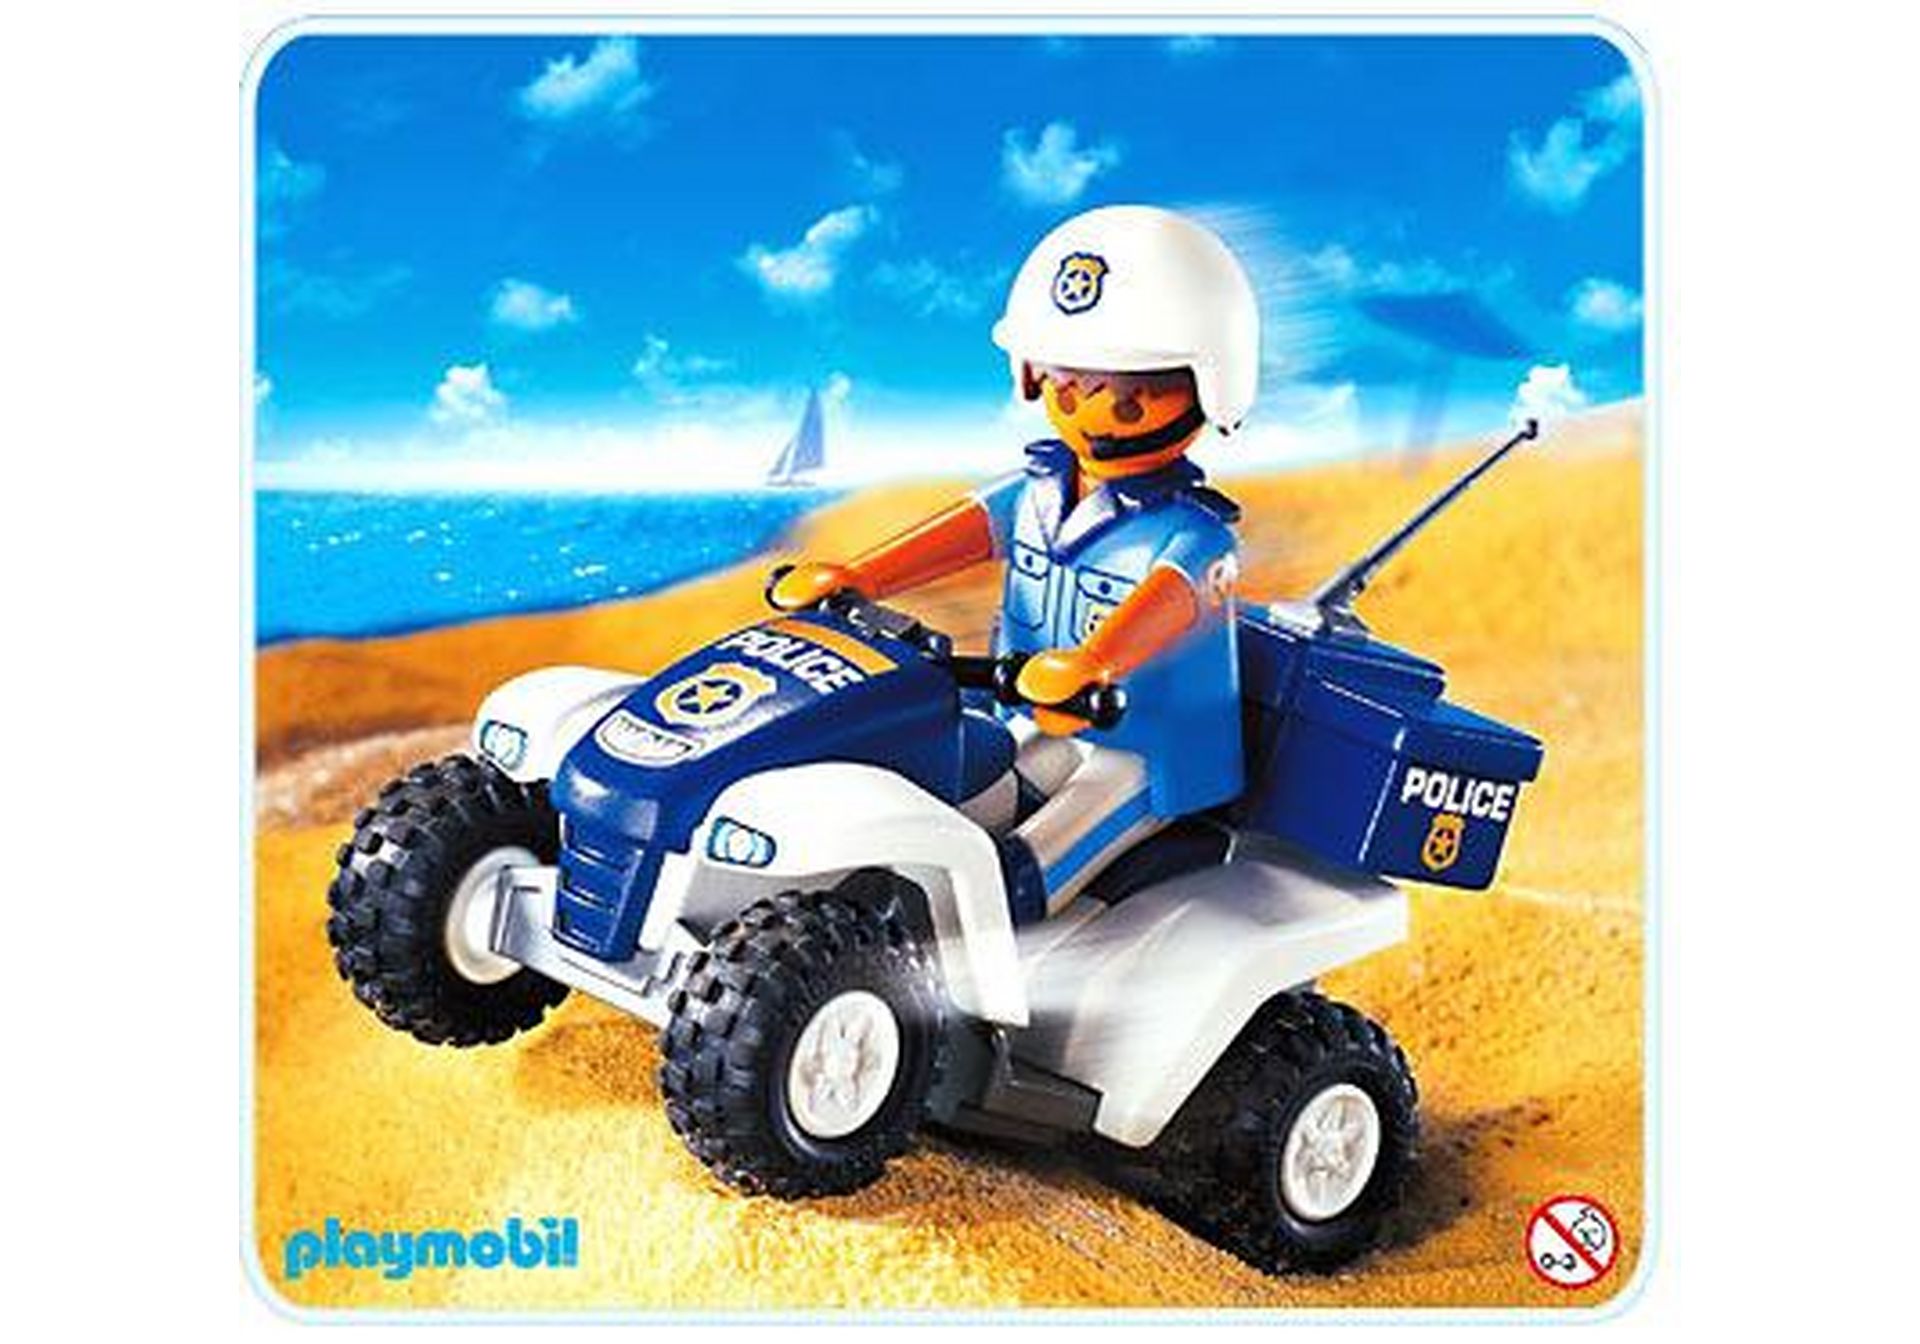 Playmobil Polizei Motorrad BLAULICHT aus Set 3564 Ersatzteil Police Quad 3655 